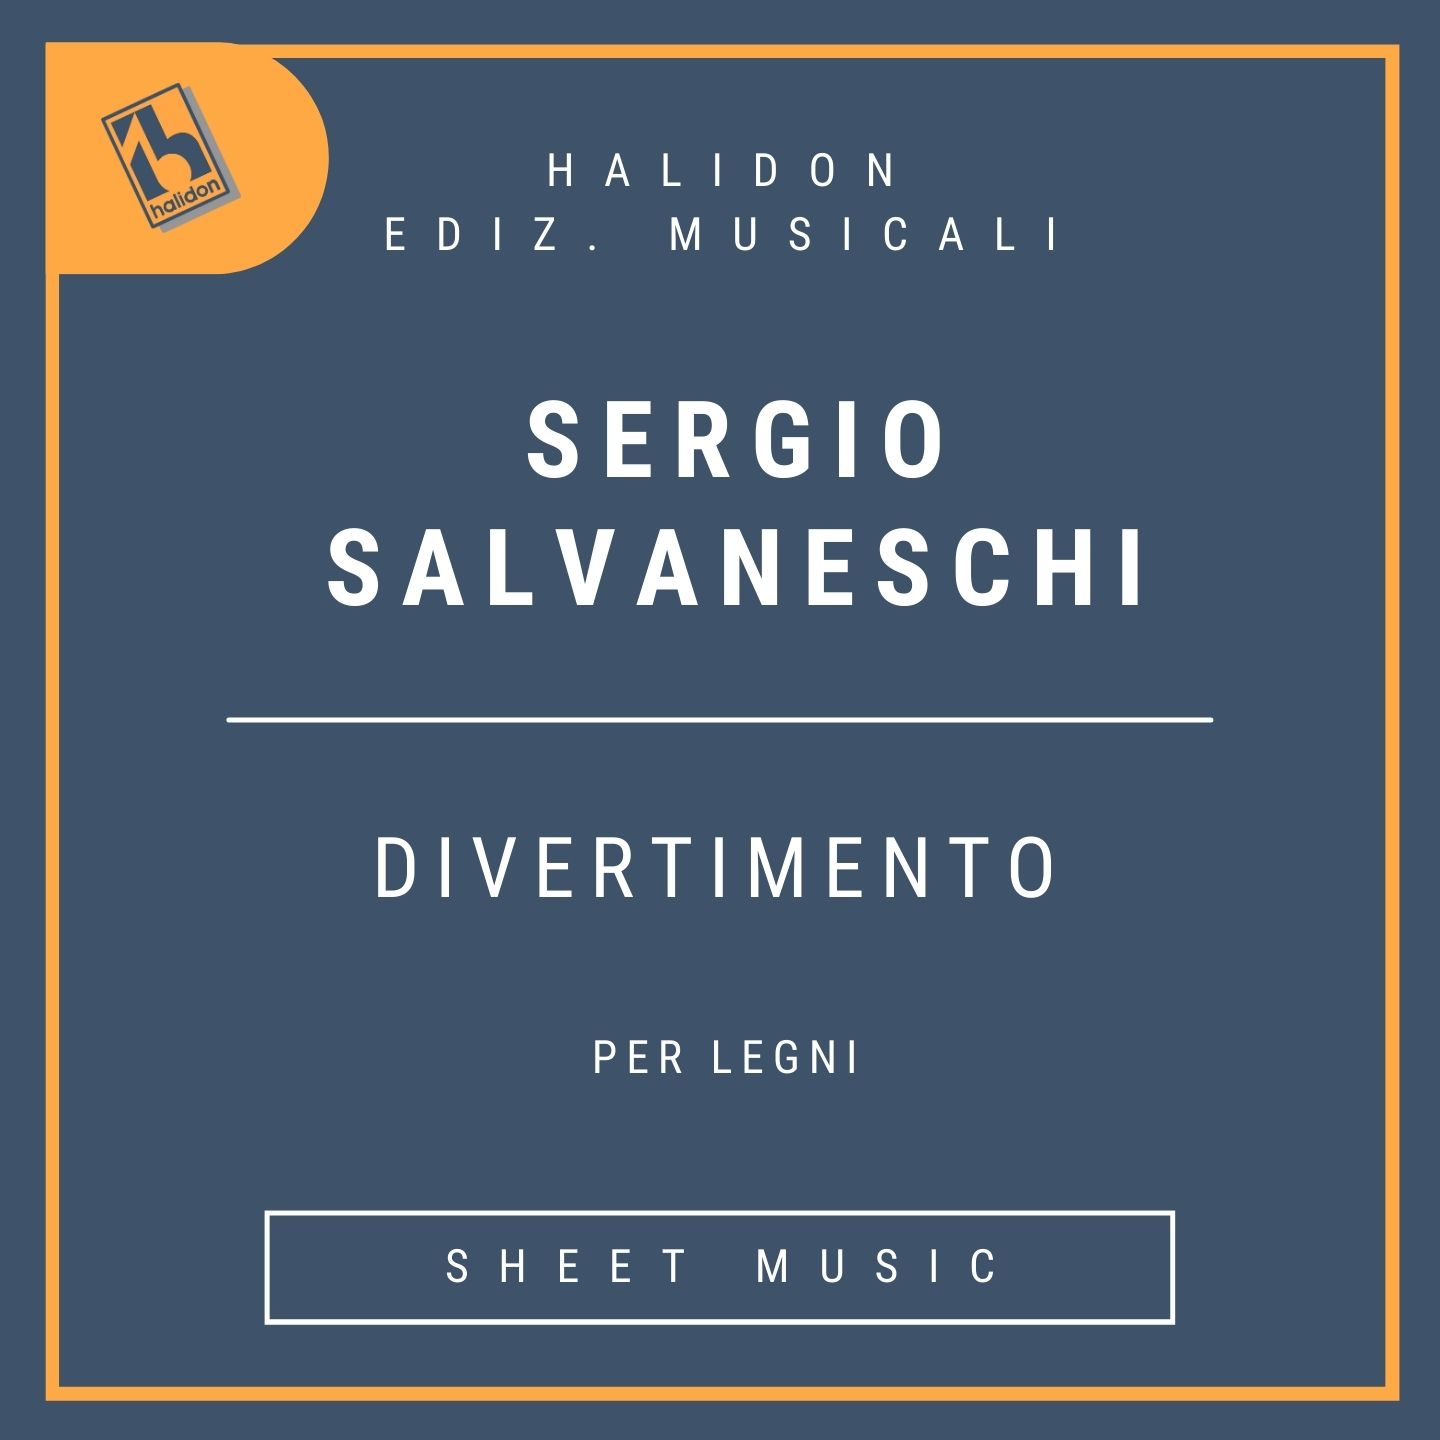 Divertimento per Legni - Flauto, Clarinetto in Si bemolle, Oboe